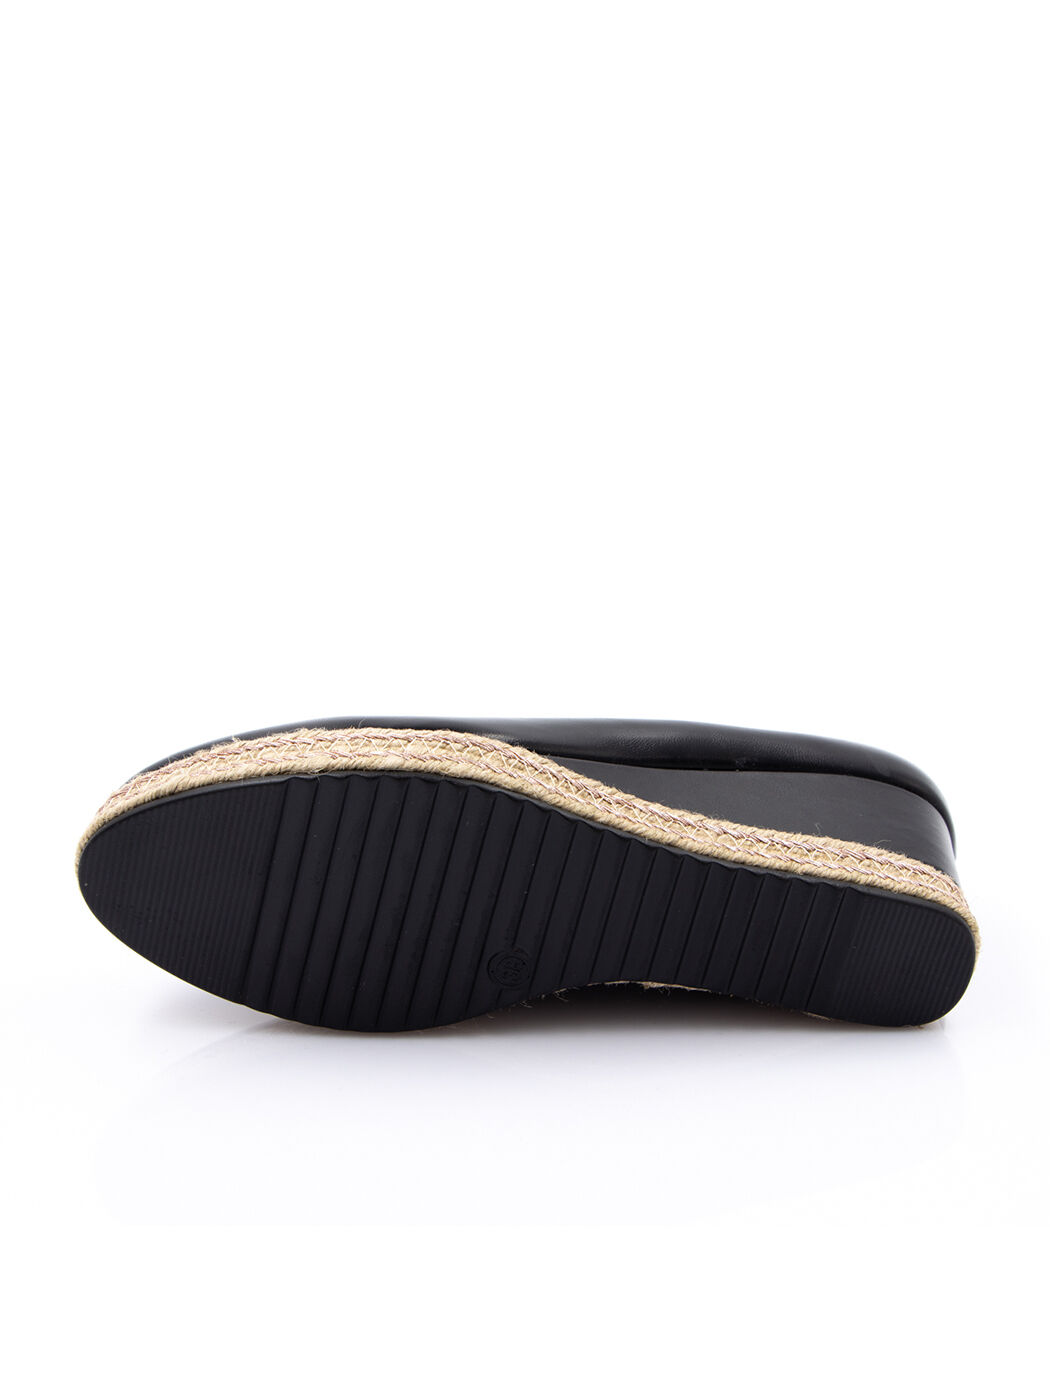 Туфли женские черные экокожа платформа демисезон от производителя 1M вид 2